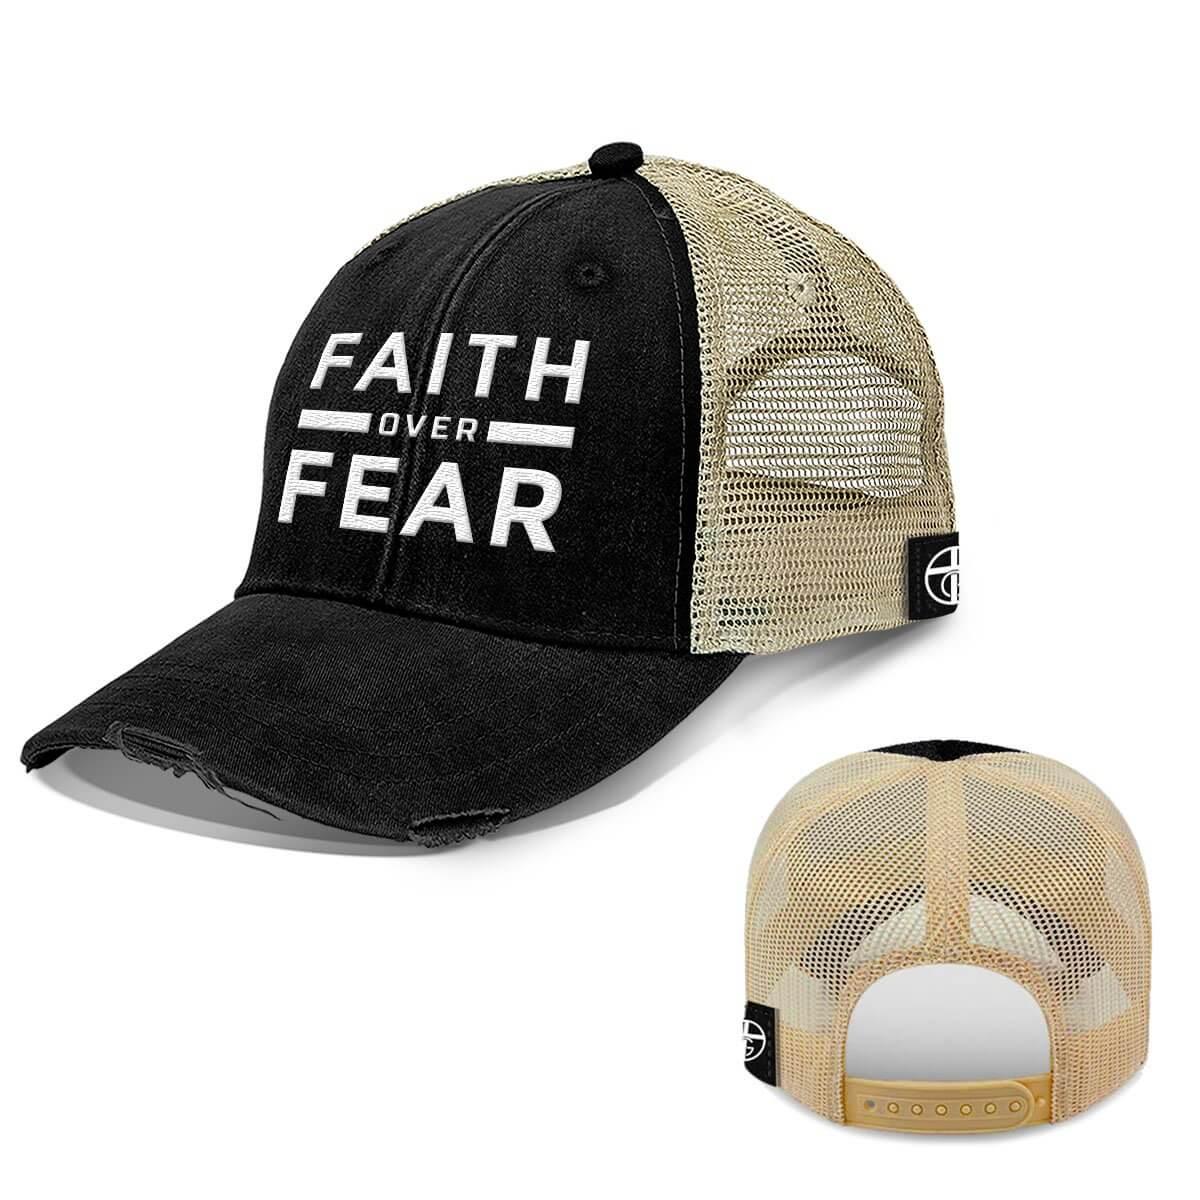 Faith Over Fear Trucker Hats